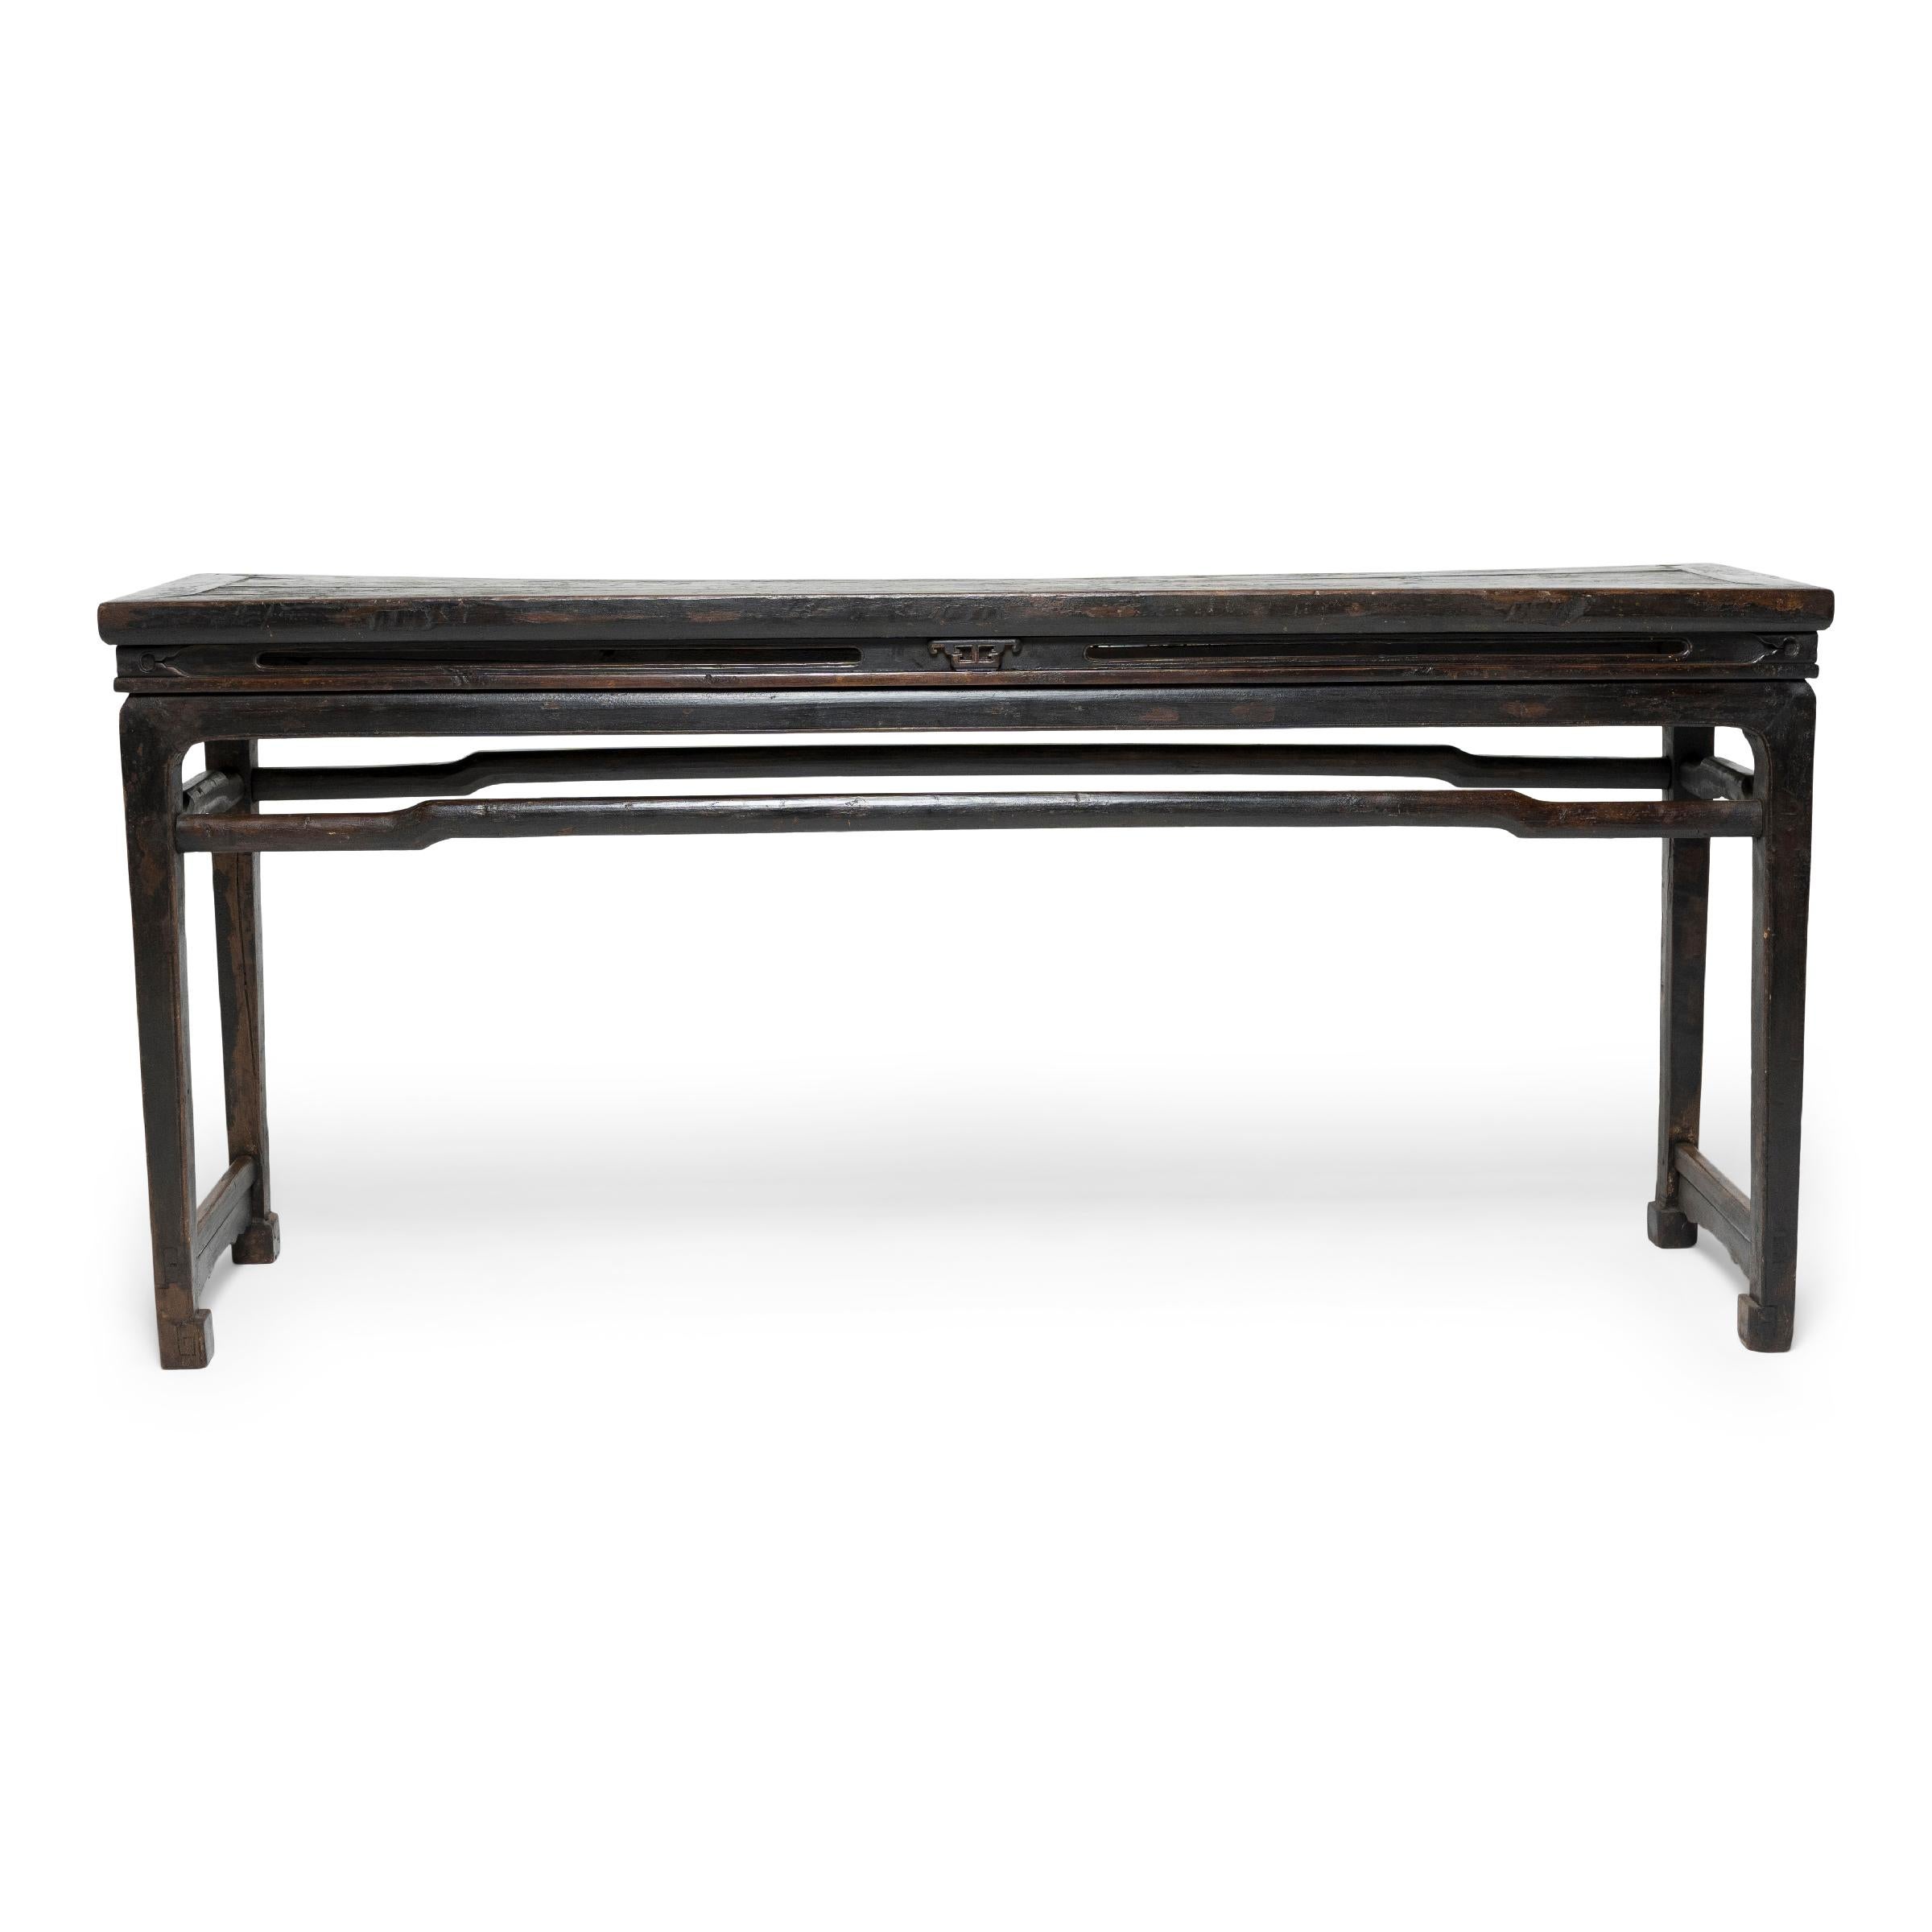 Perfectionnées sous la dynastie Ming, les techniques d'assemblage complexes ont permis aux artisans de créer des meubles aux lignes fluides, d'une grande légèreté et d'une durabilité remarquable. Fabriquée selon des méthodes traditionnelles, cette